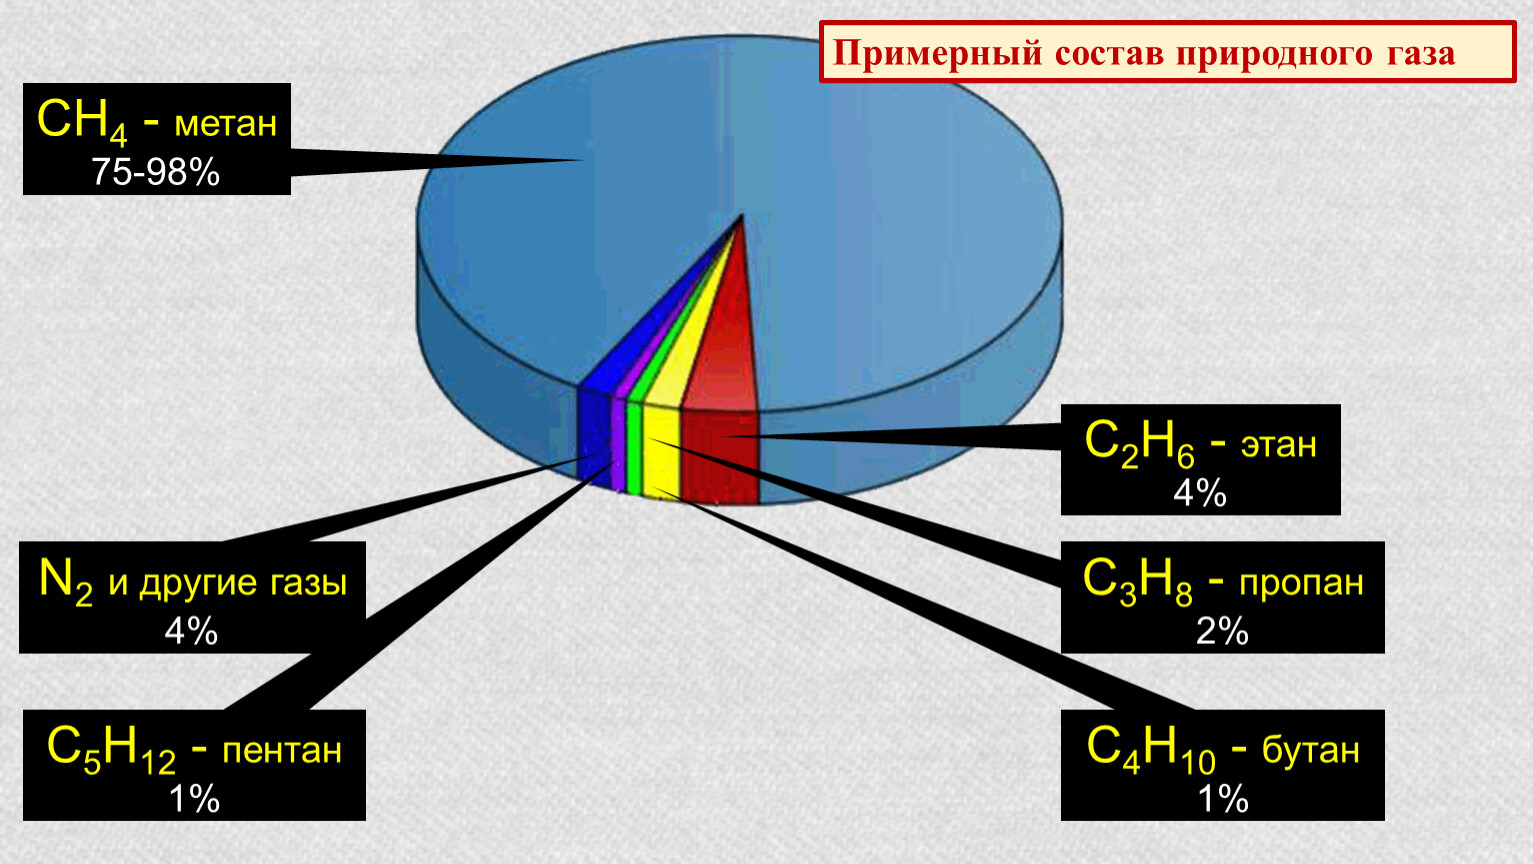 Какой состав природных газов. Природный ГАЗ хим состав. Химический состав природного газа диаграмма. Примерный химический состав природного газа. Состав метана газа природный ГАЗ.